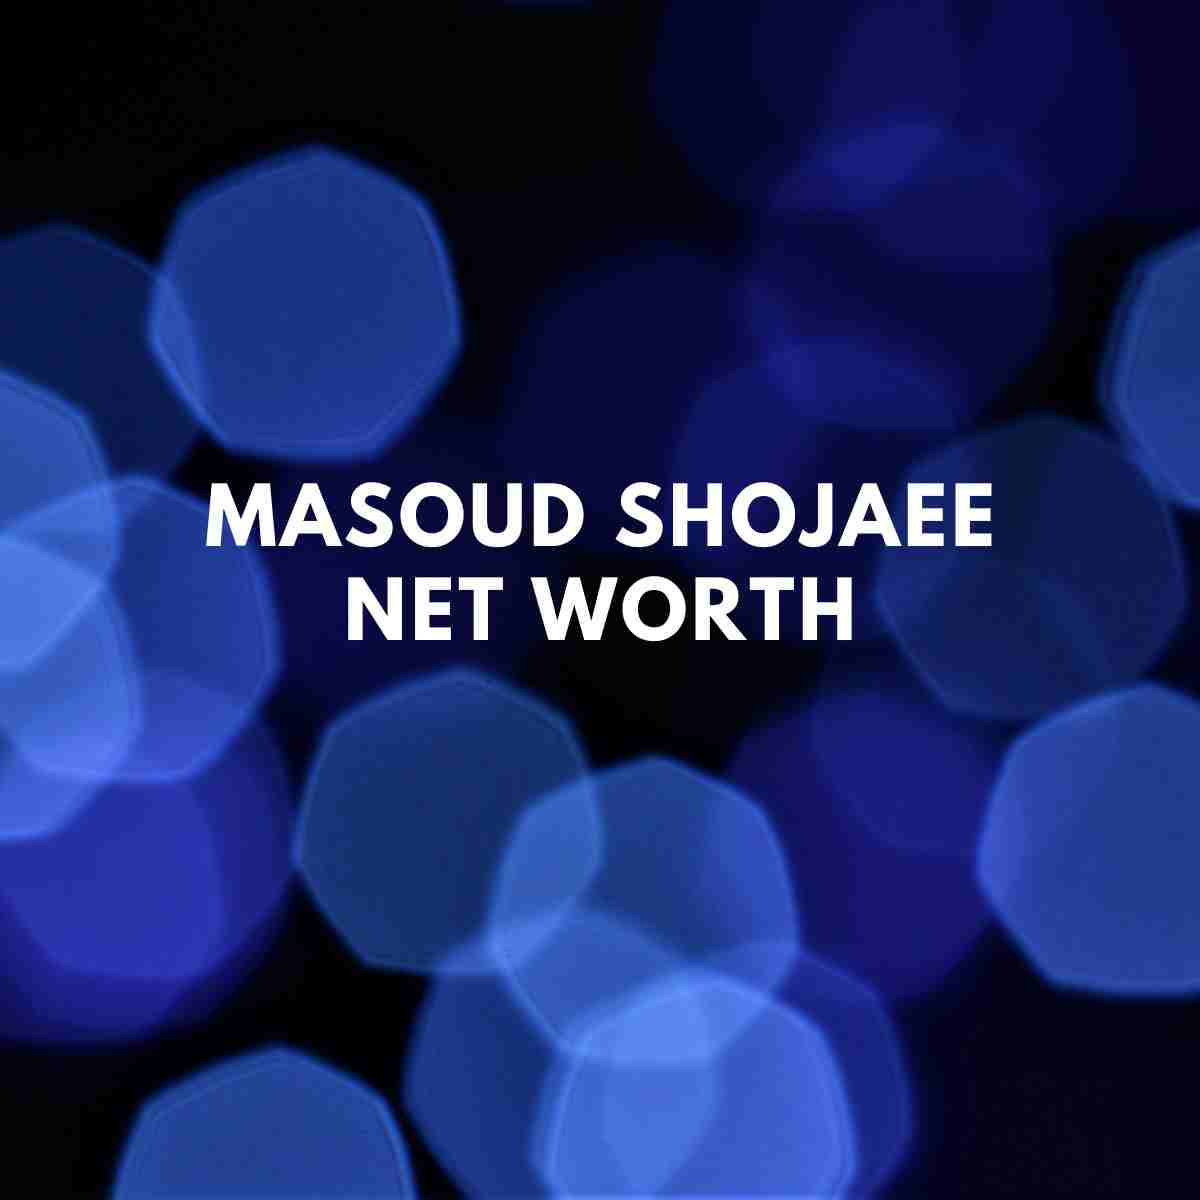 Masoud Shojaee net worth